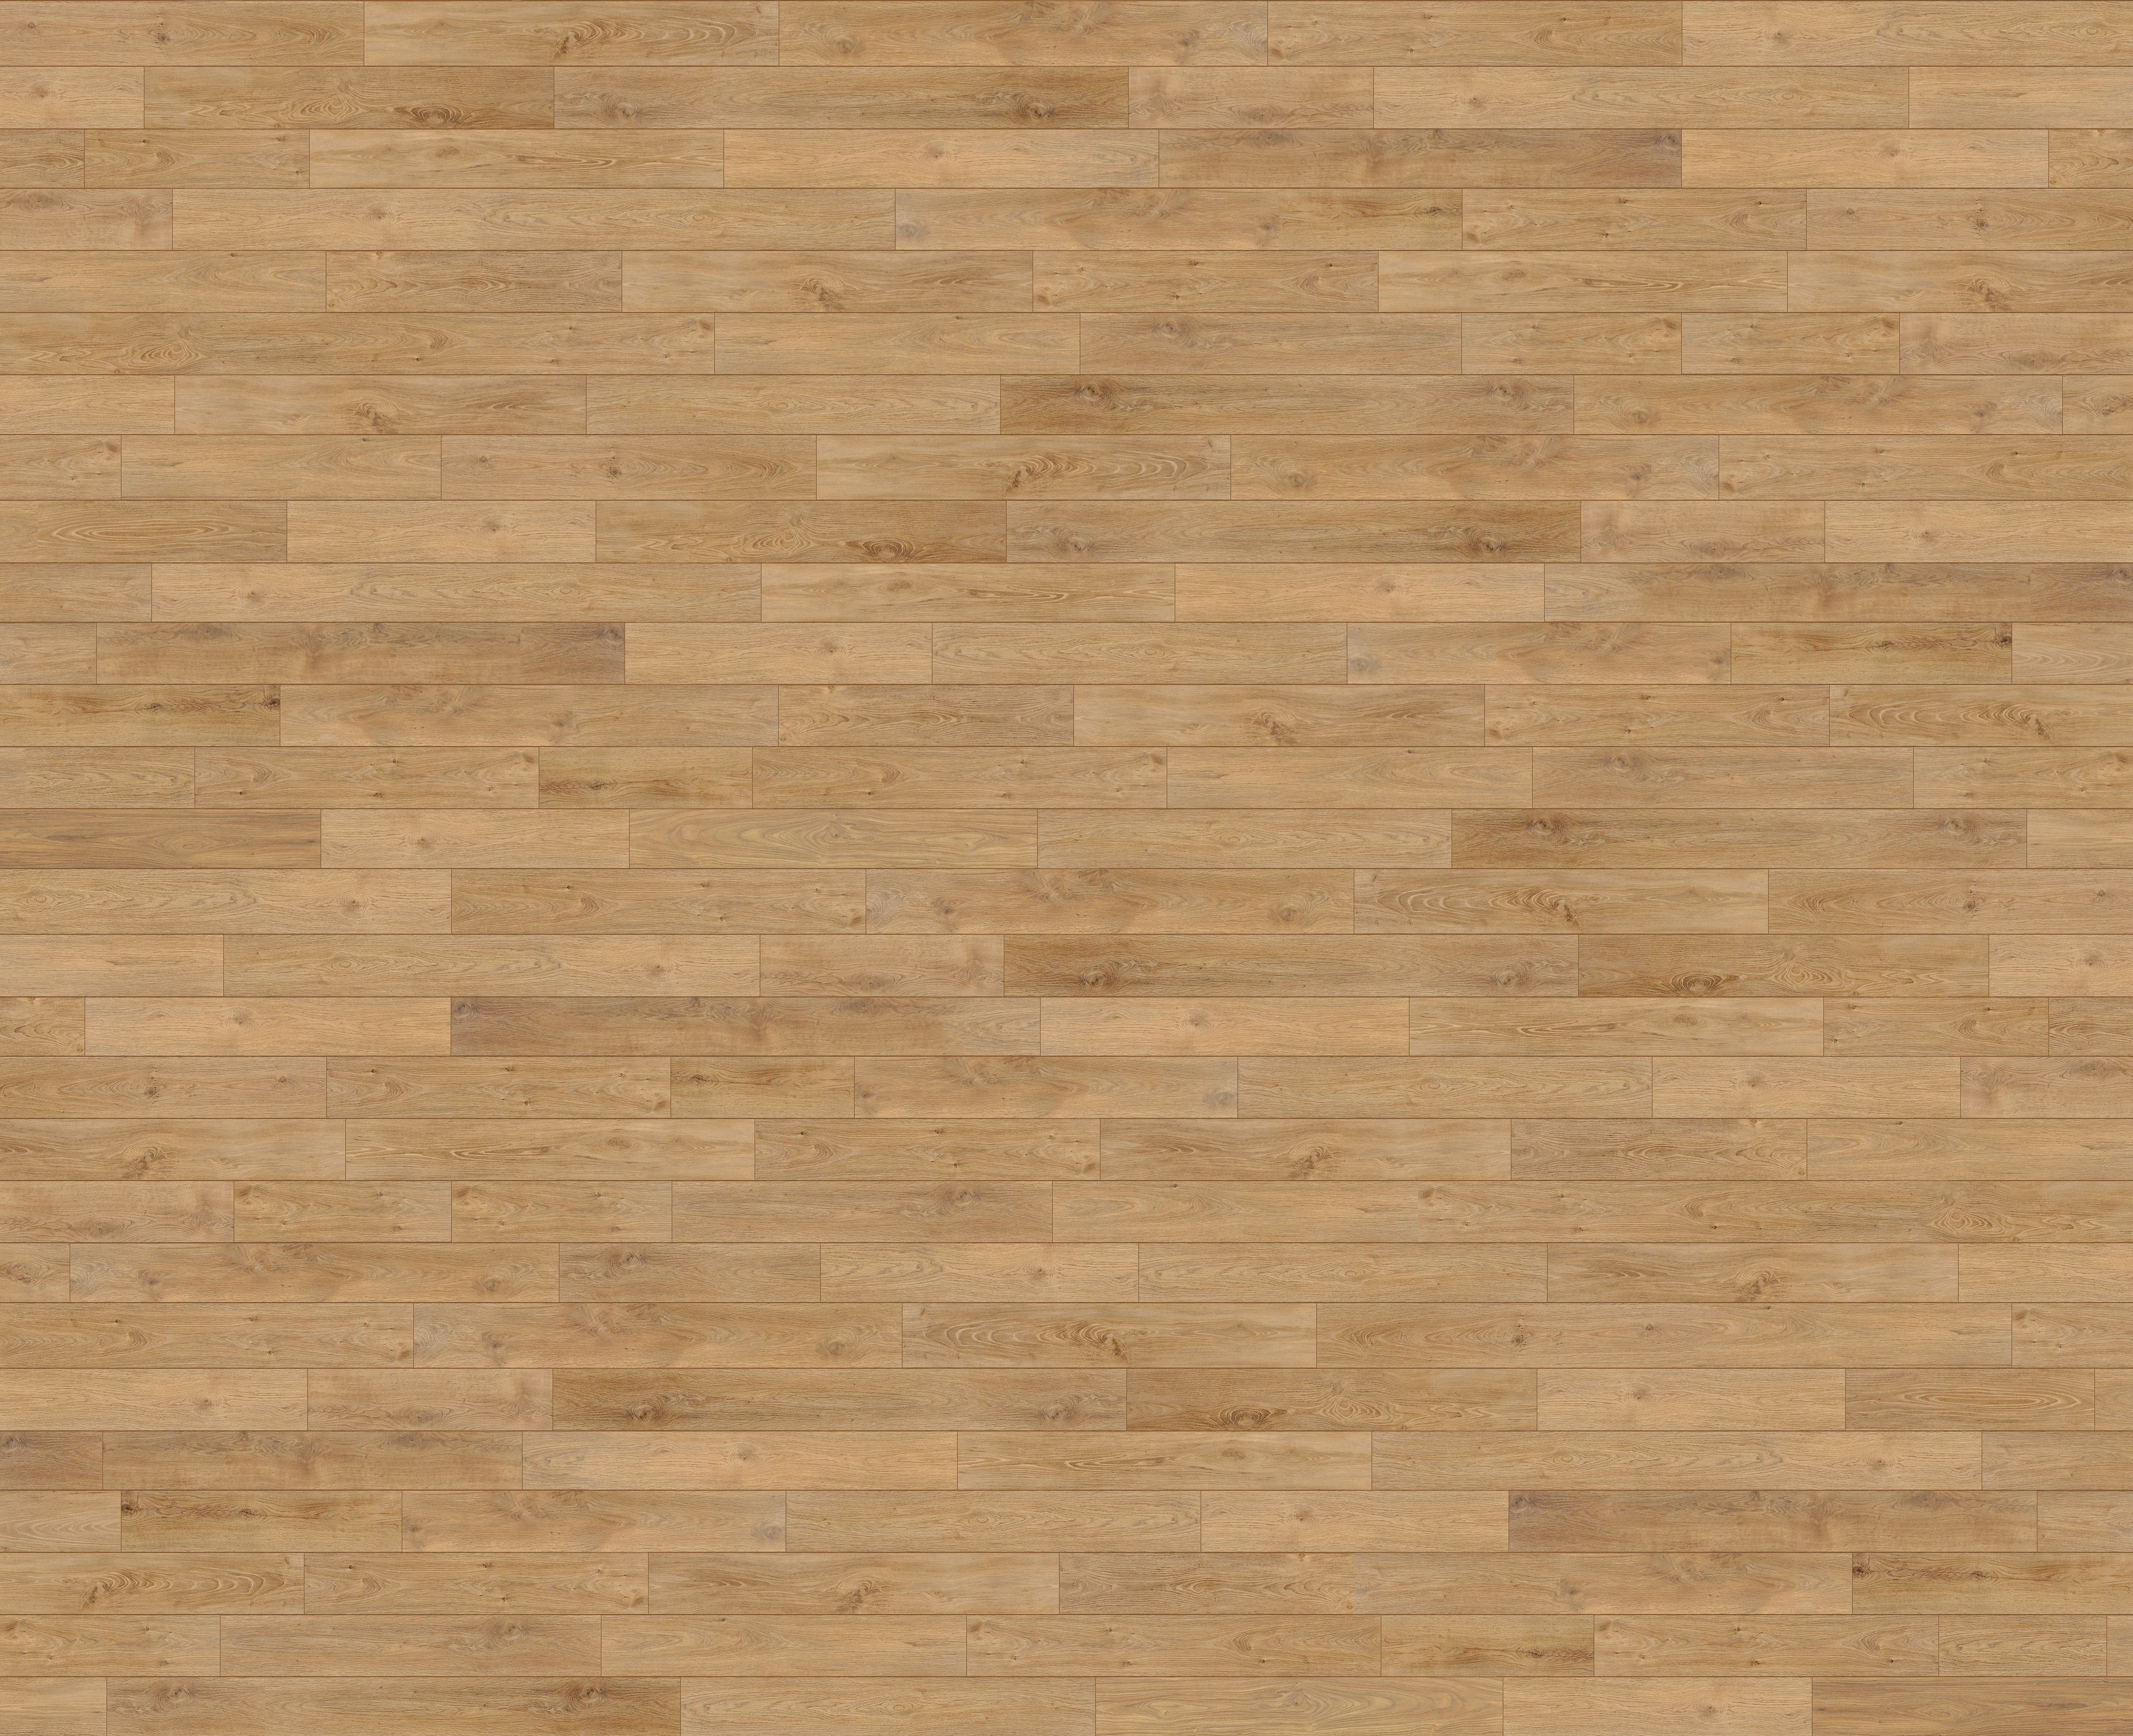 Basketball Hardwood Floor Texture Inspiration 520416 Floor Design ...